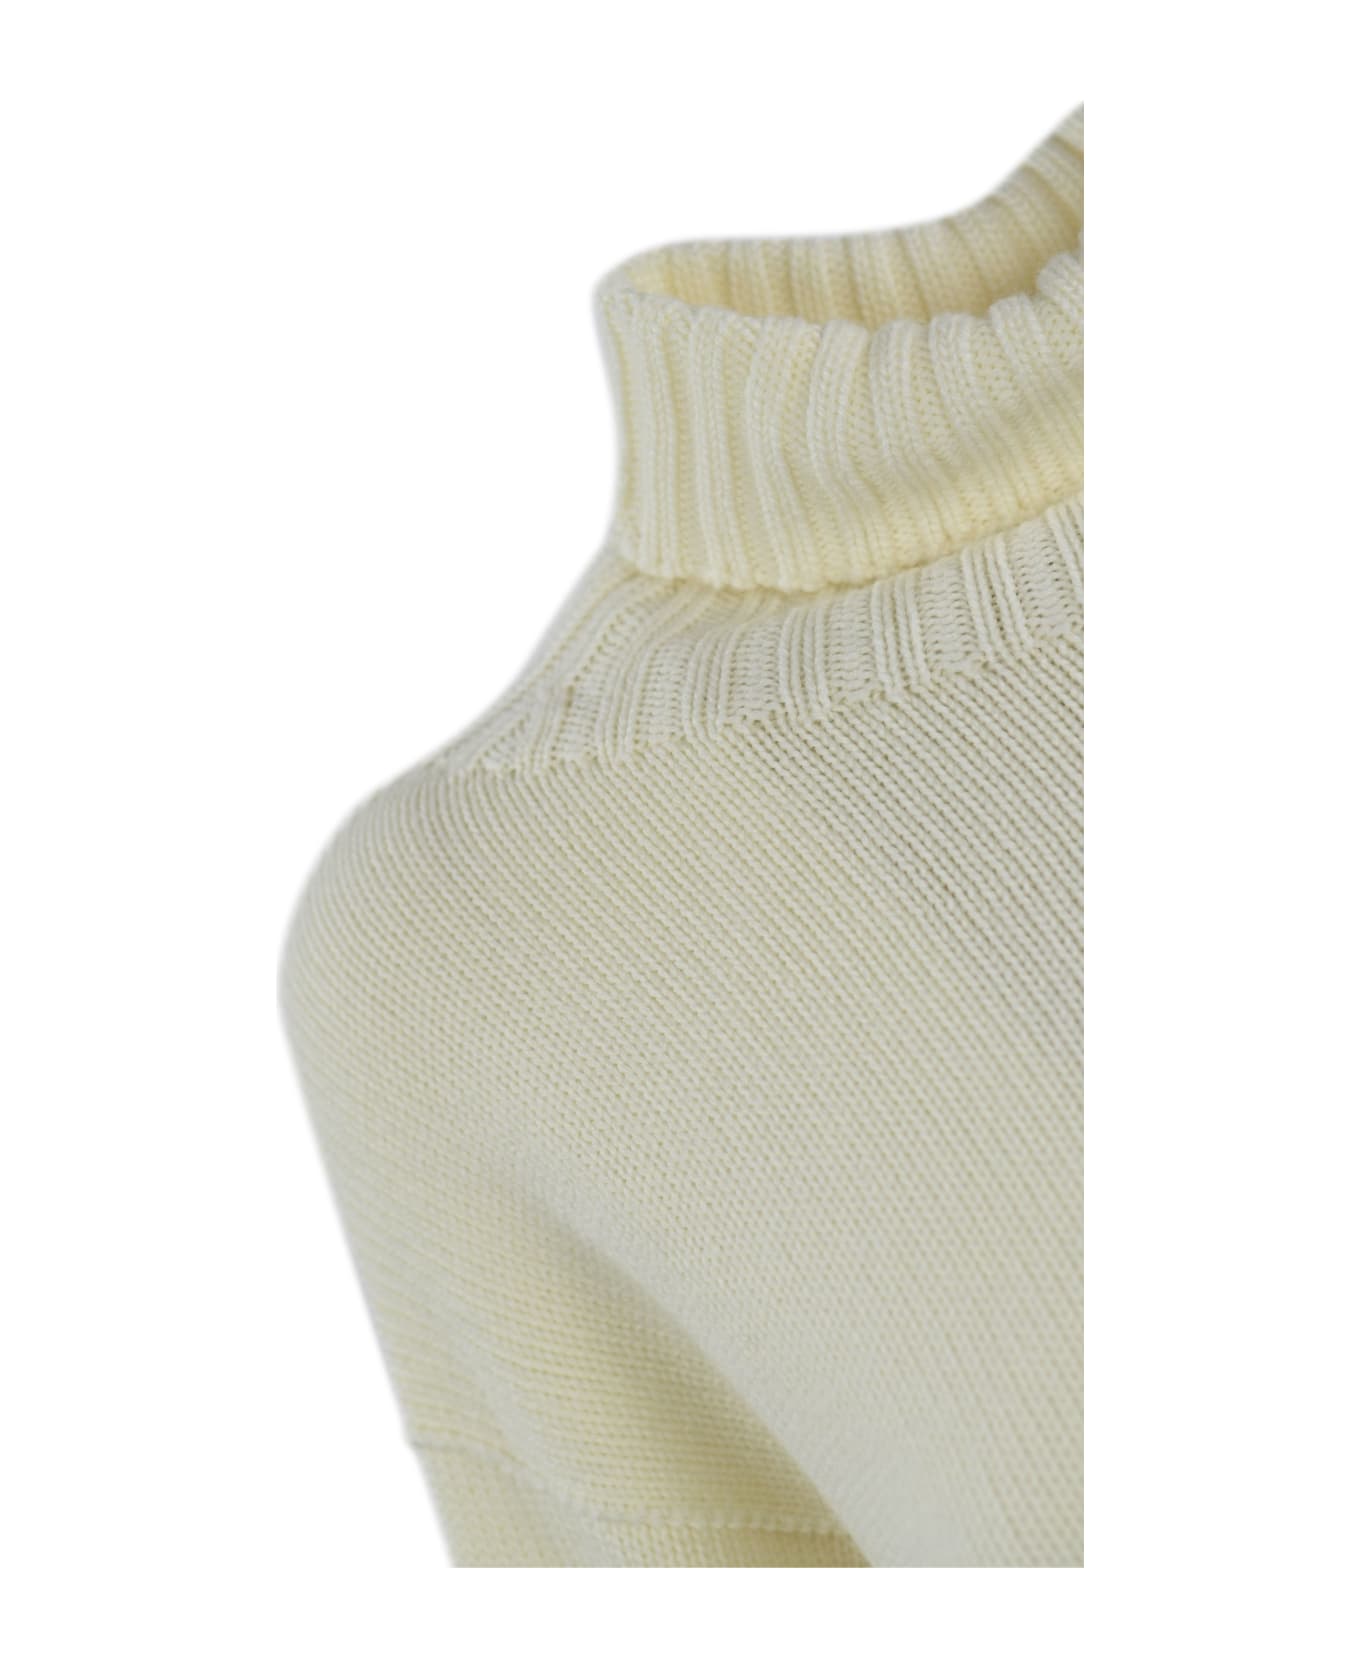 Drumohr High Neck Sweater - Bianco